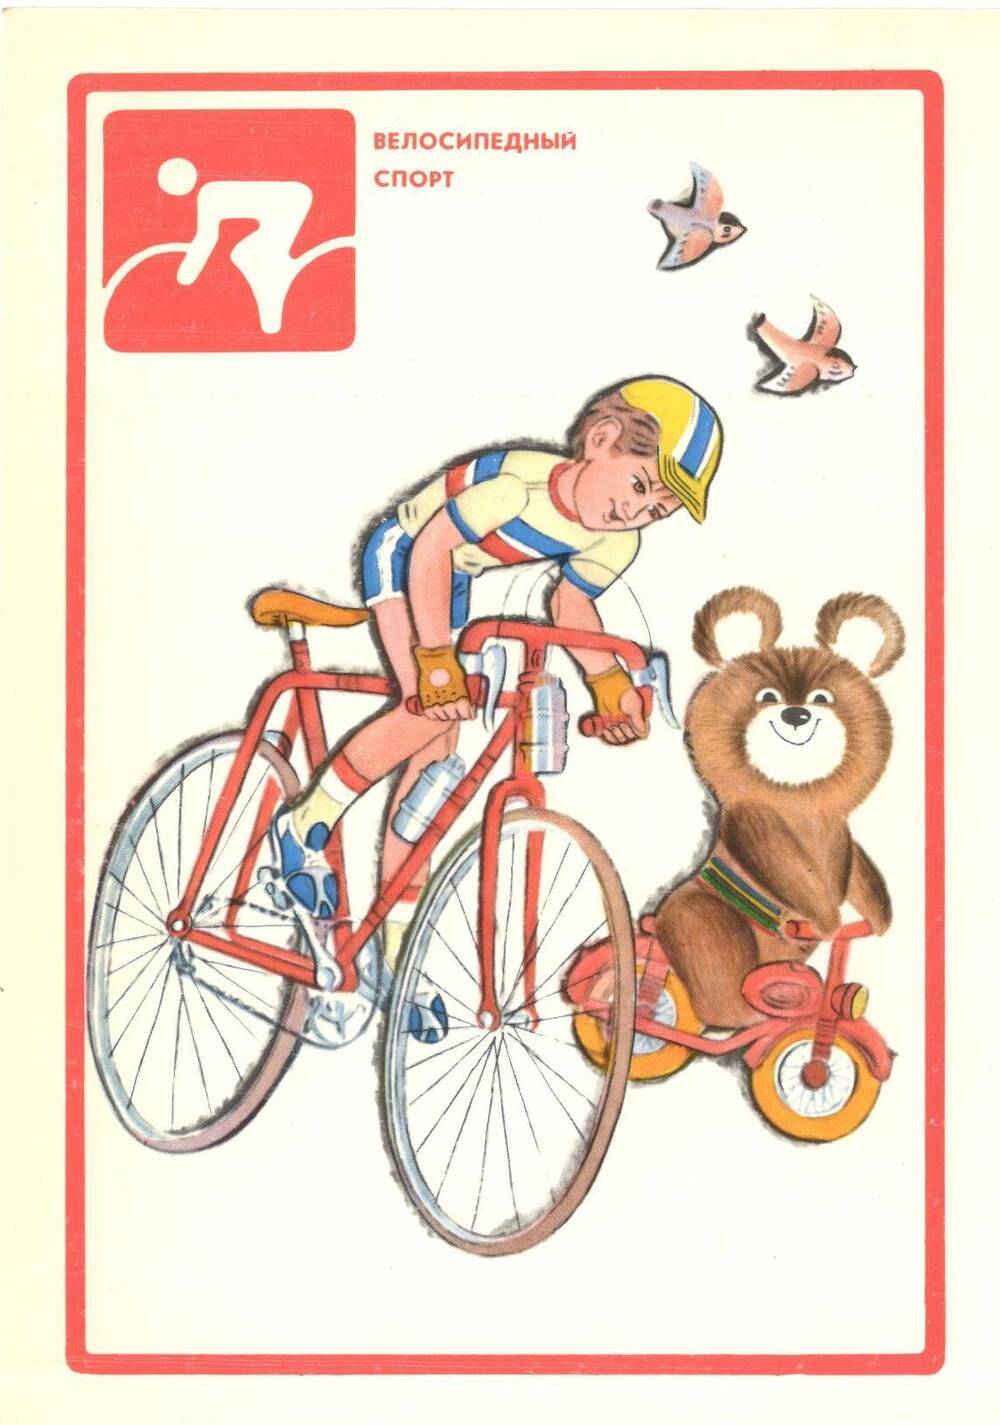 Фотооткрытка Олимпийская азбука. Велосипедный спорт.